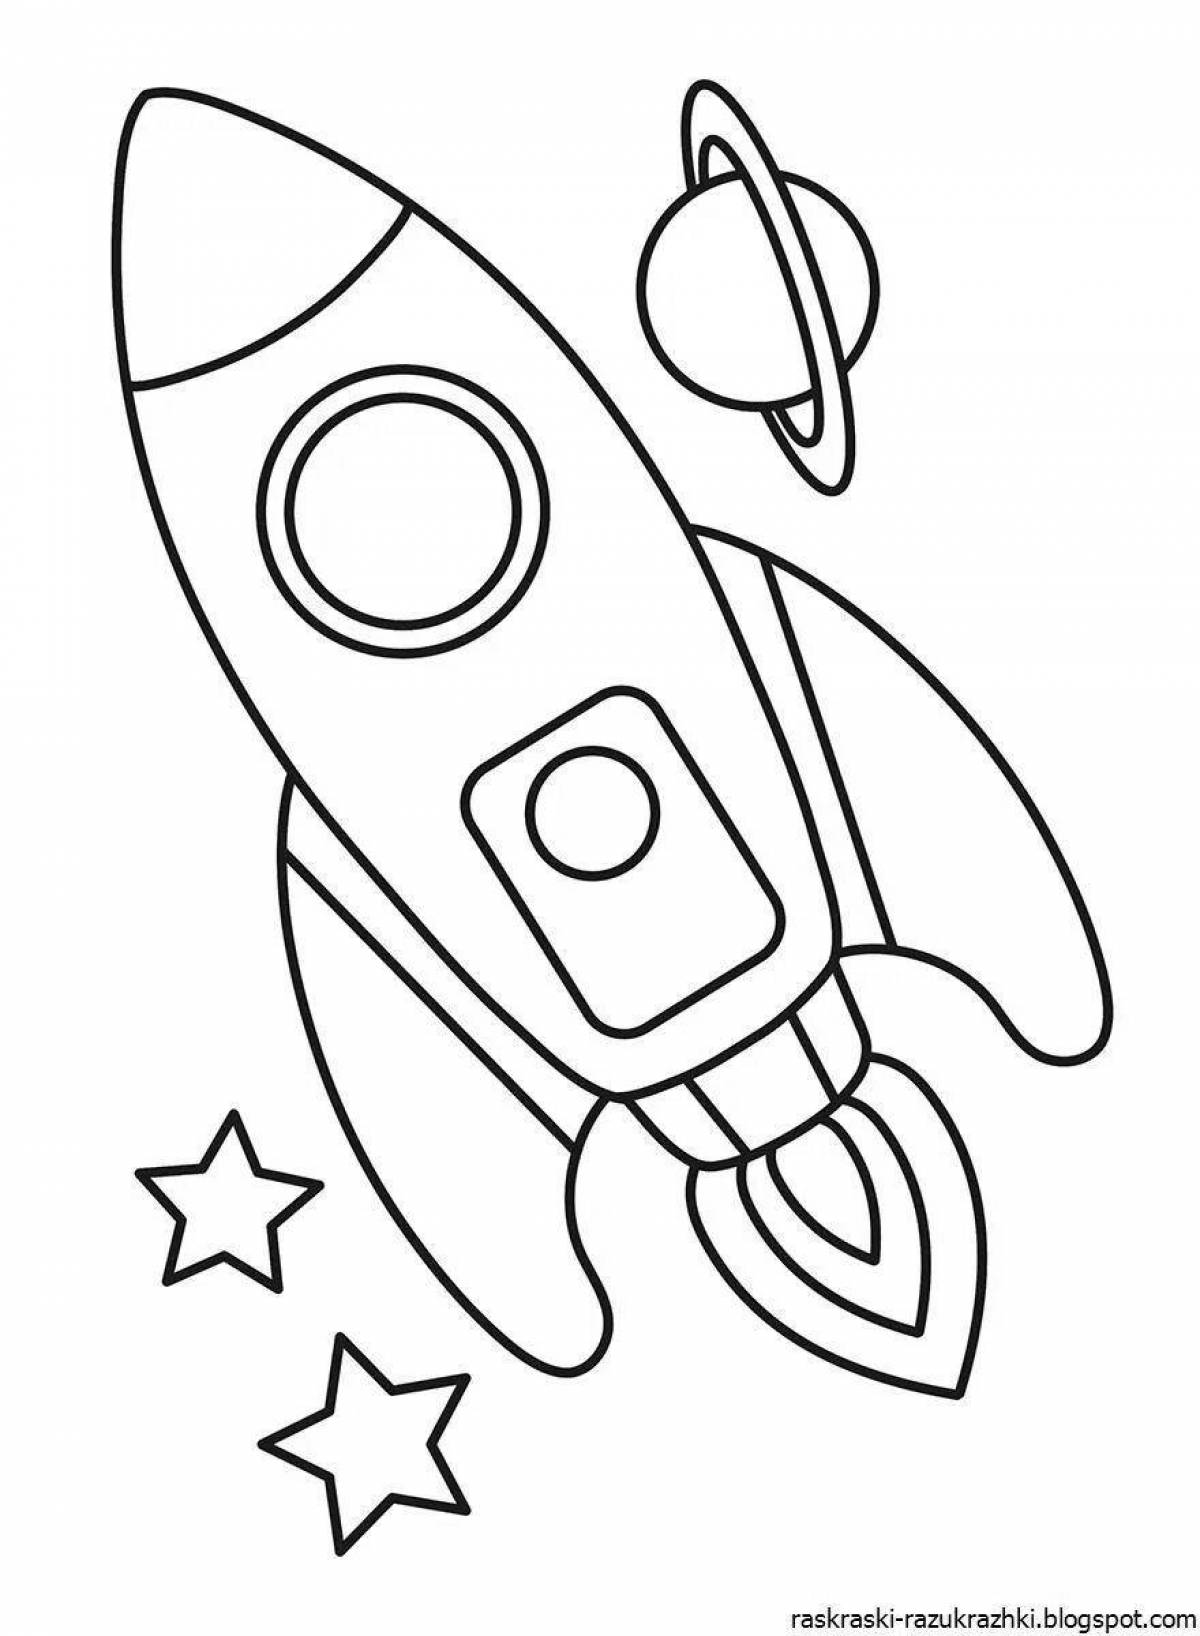 Раскраска ракета для детей 4 5 лет